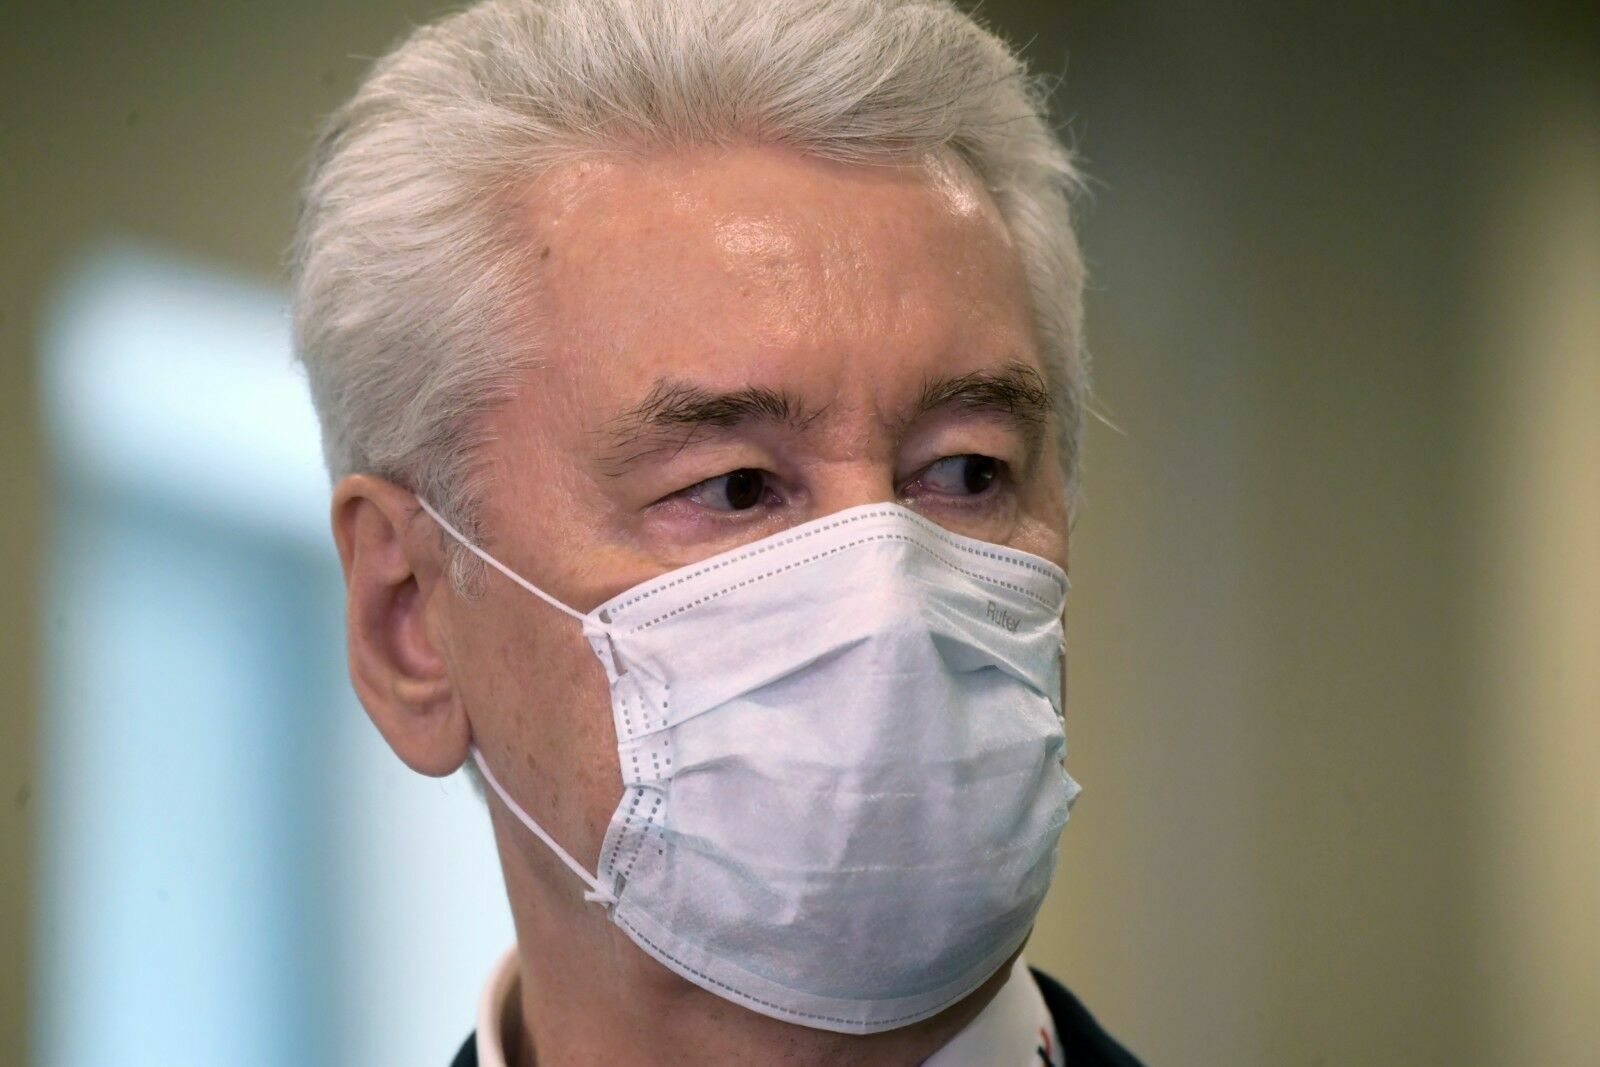 Собянин заявил об улучшении ситуации с коронавирусом в Москве